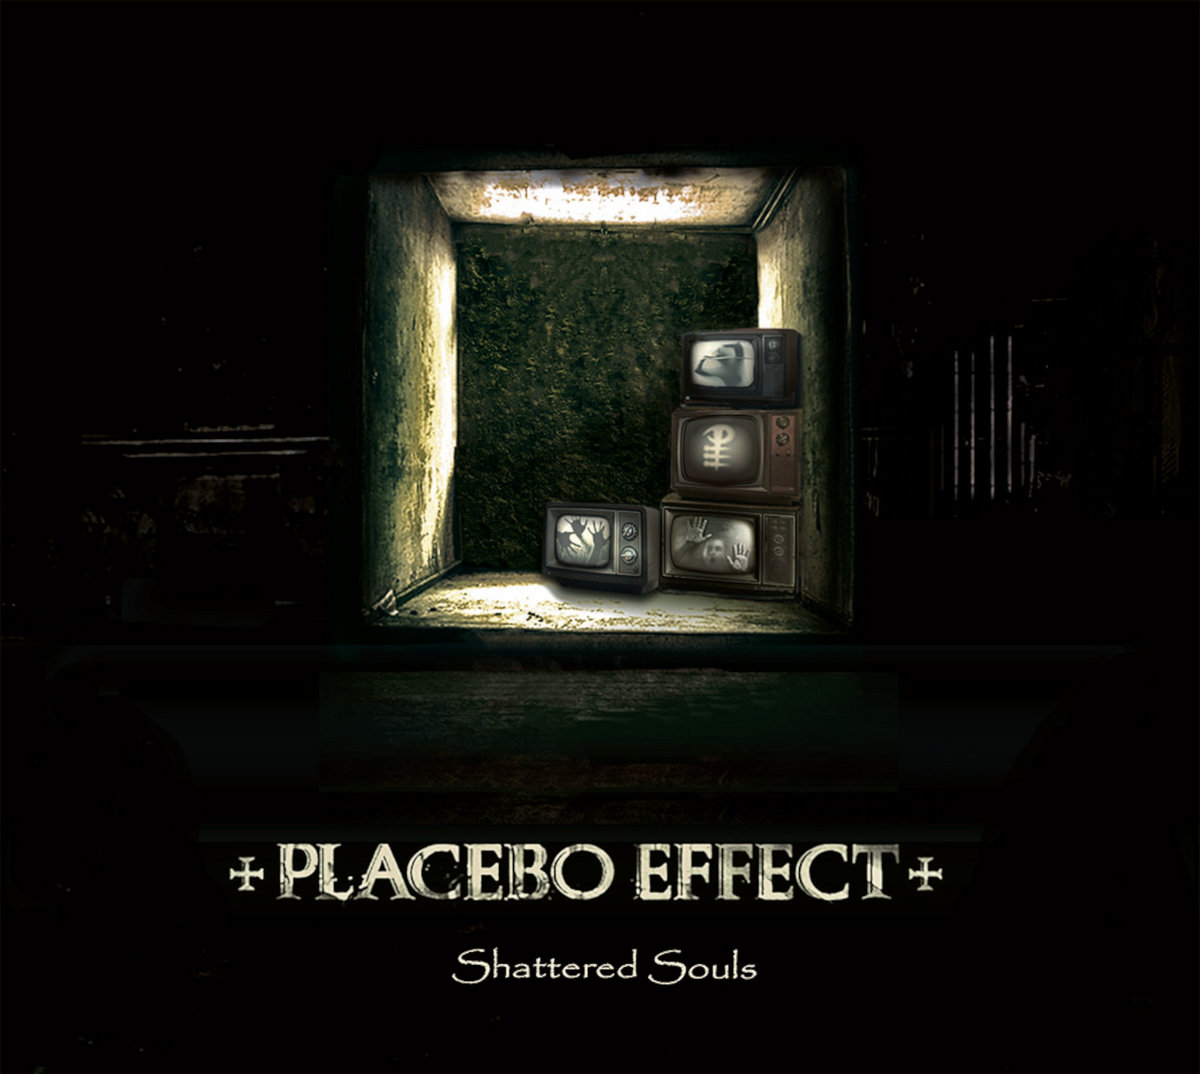 Placebo Effect - Open Dead Eyes